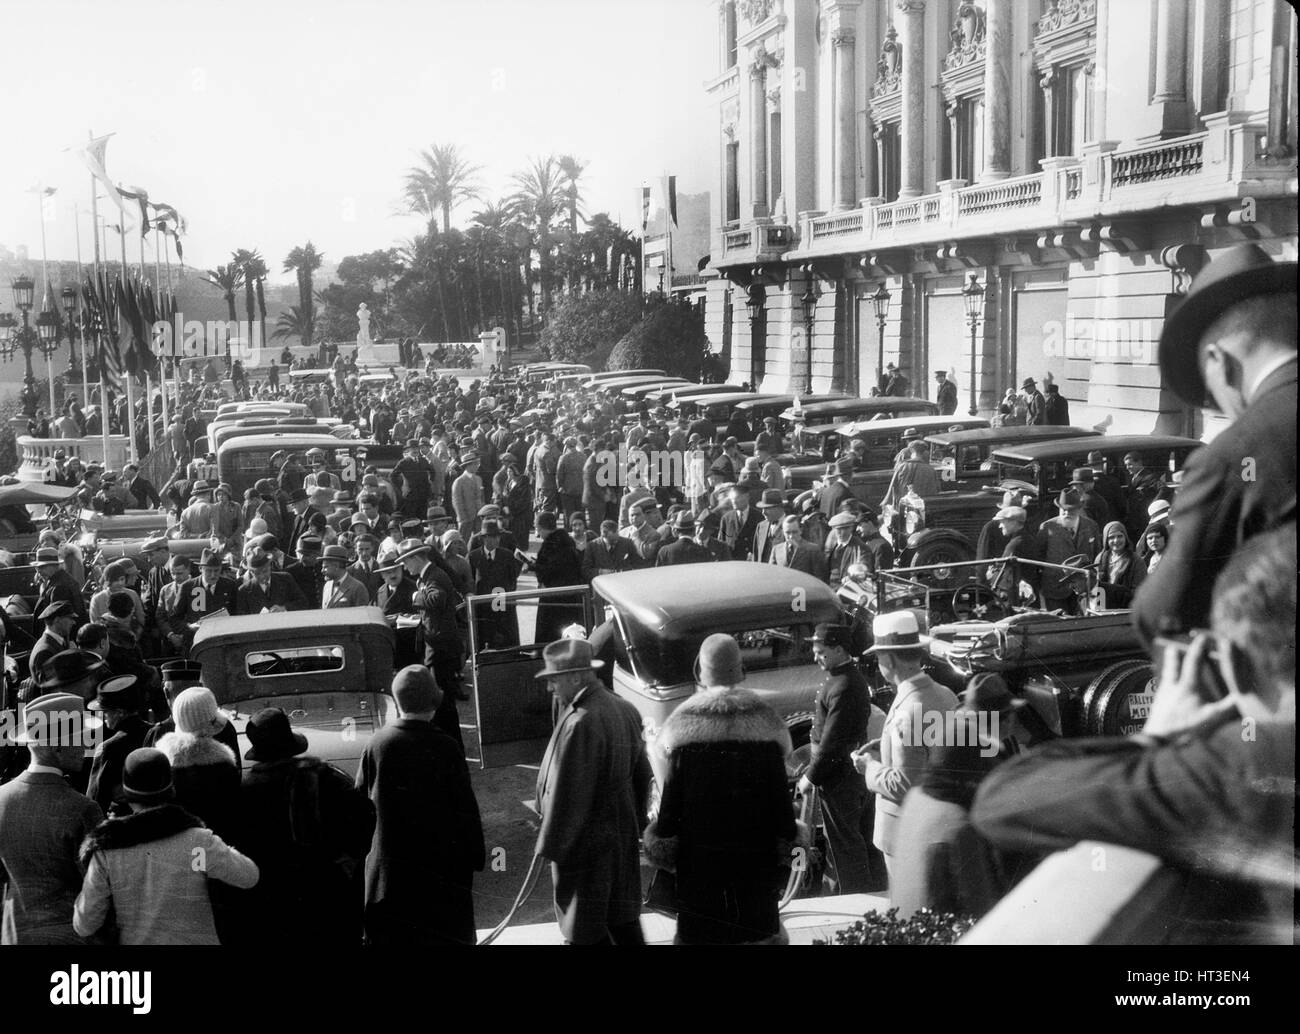 Les foules dans la rue pour le Rallye de Monte Carlo, 1930. Artiste : Bill Brunell. Banque D'Images